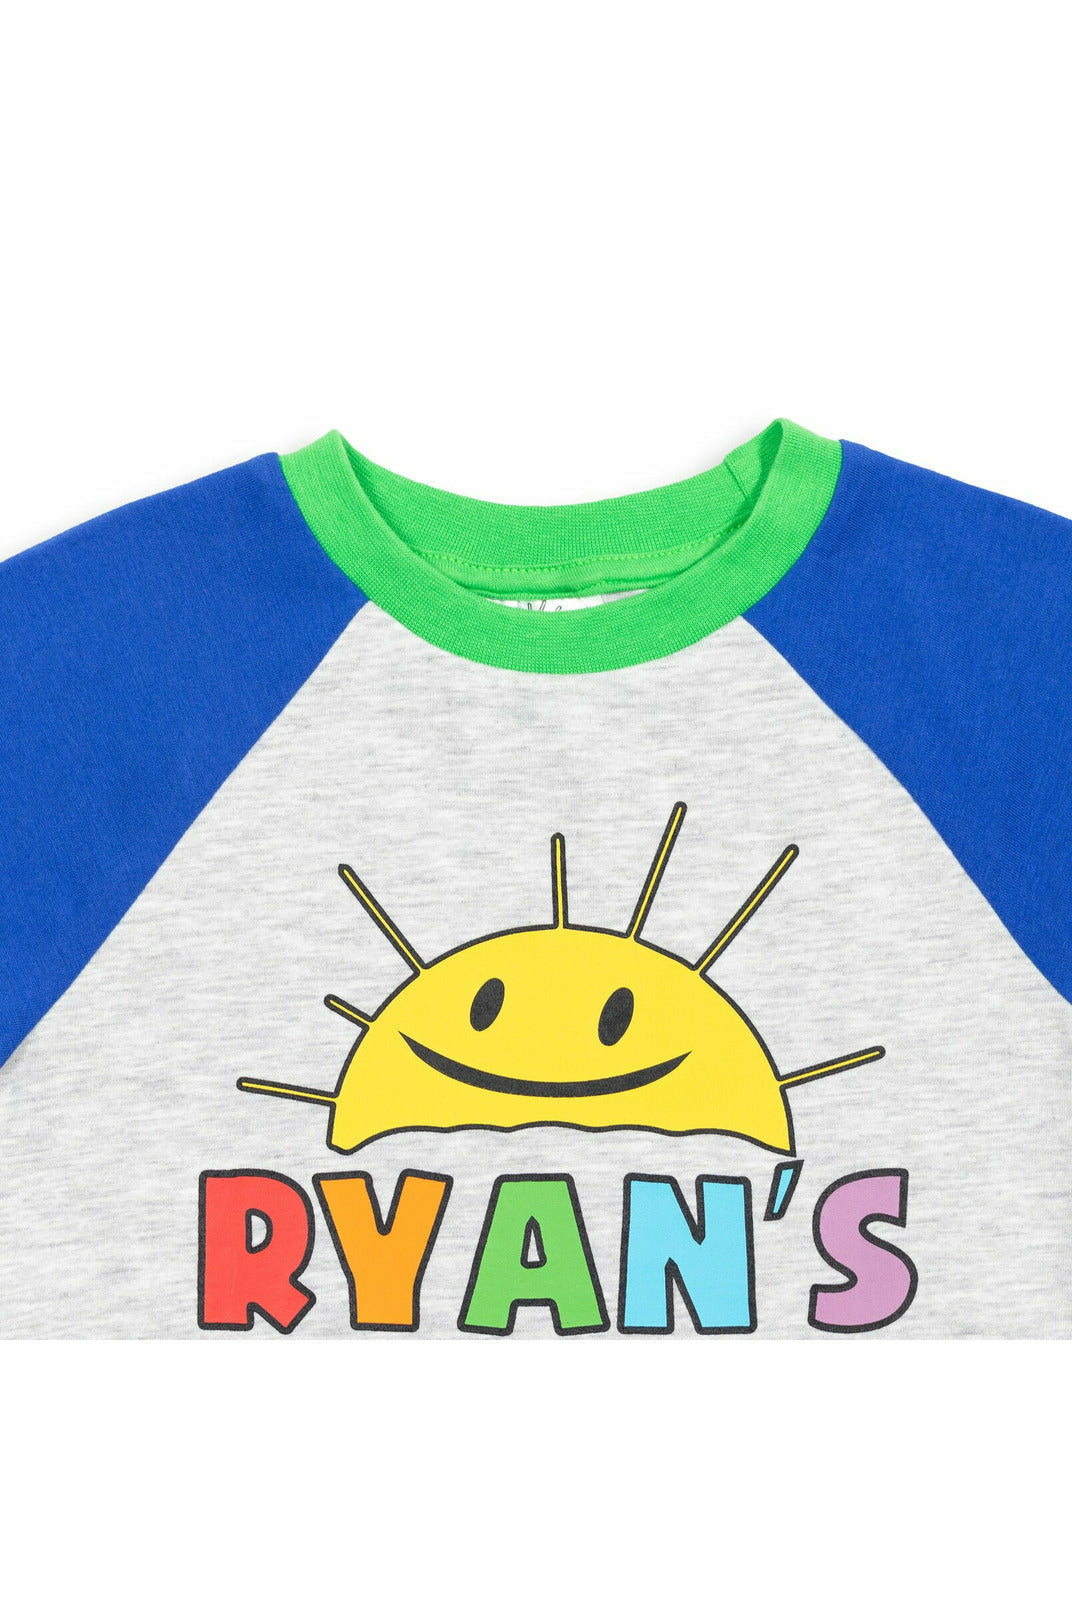 RYANS WORLD Graphic T-Shirt